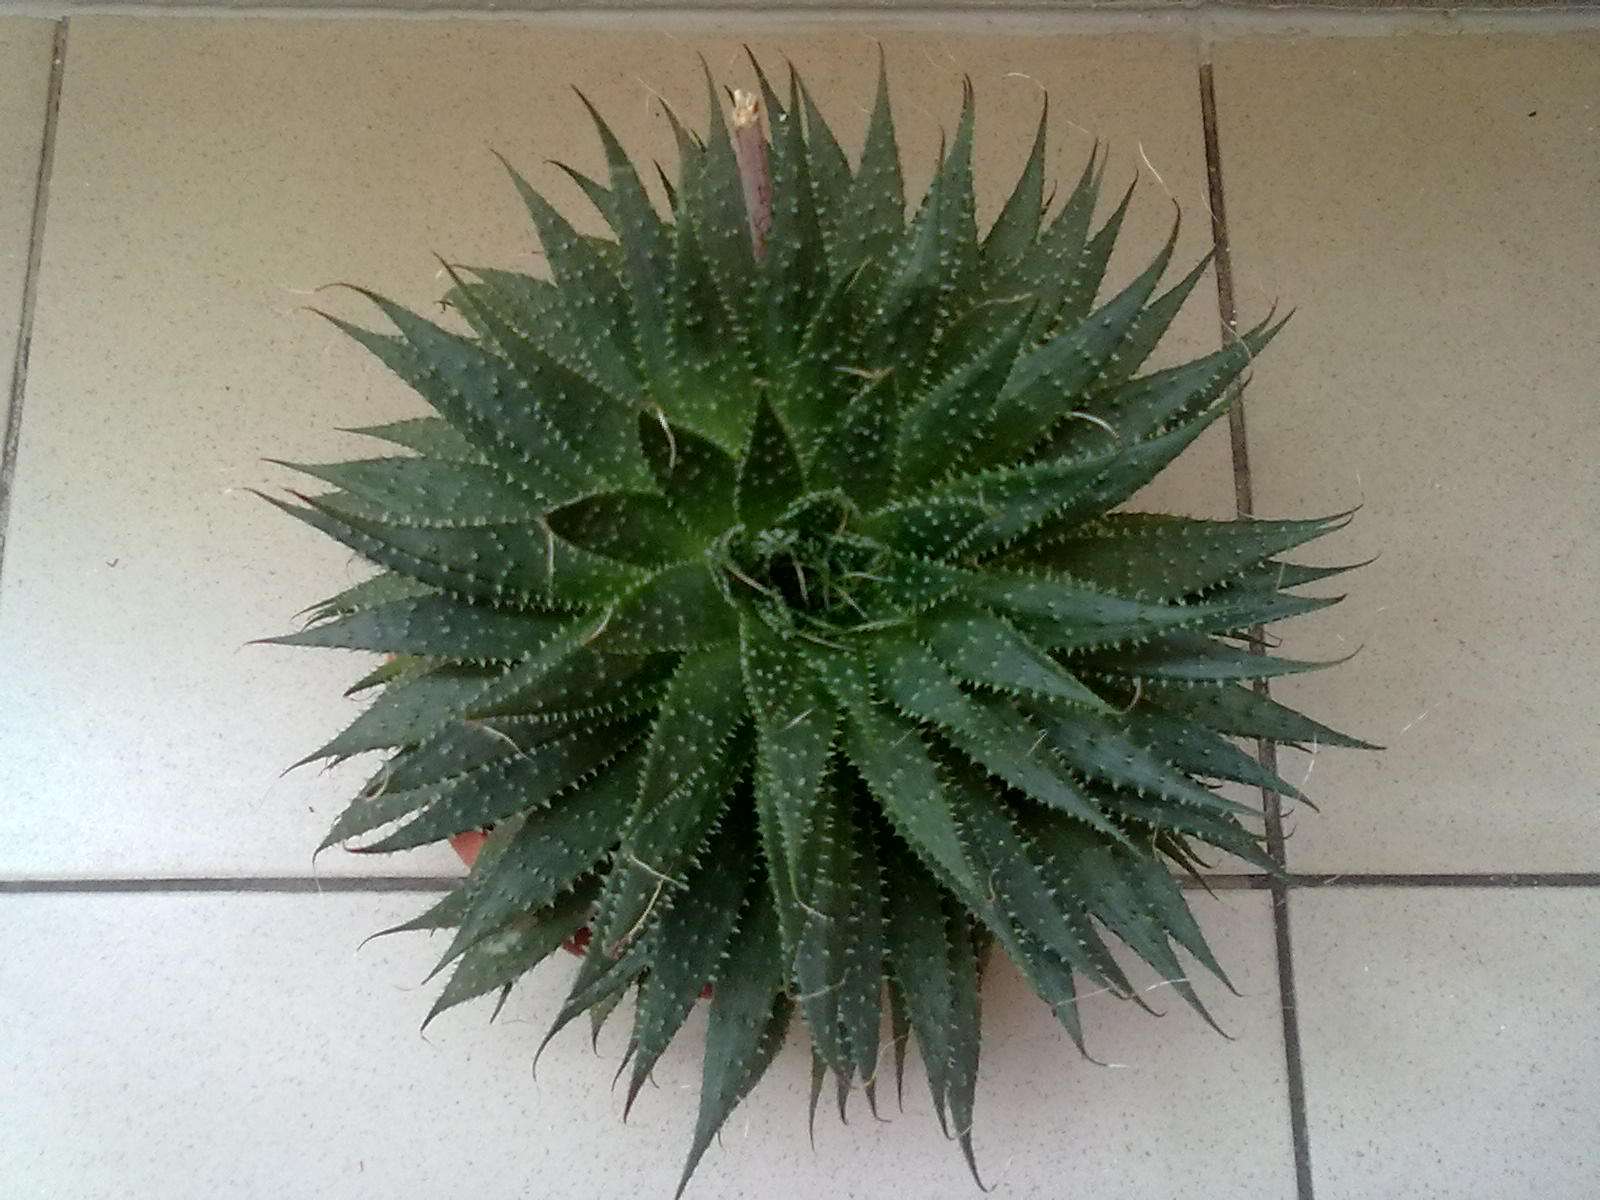 Aloe aristata - Obrázok č. 1